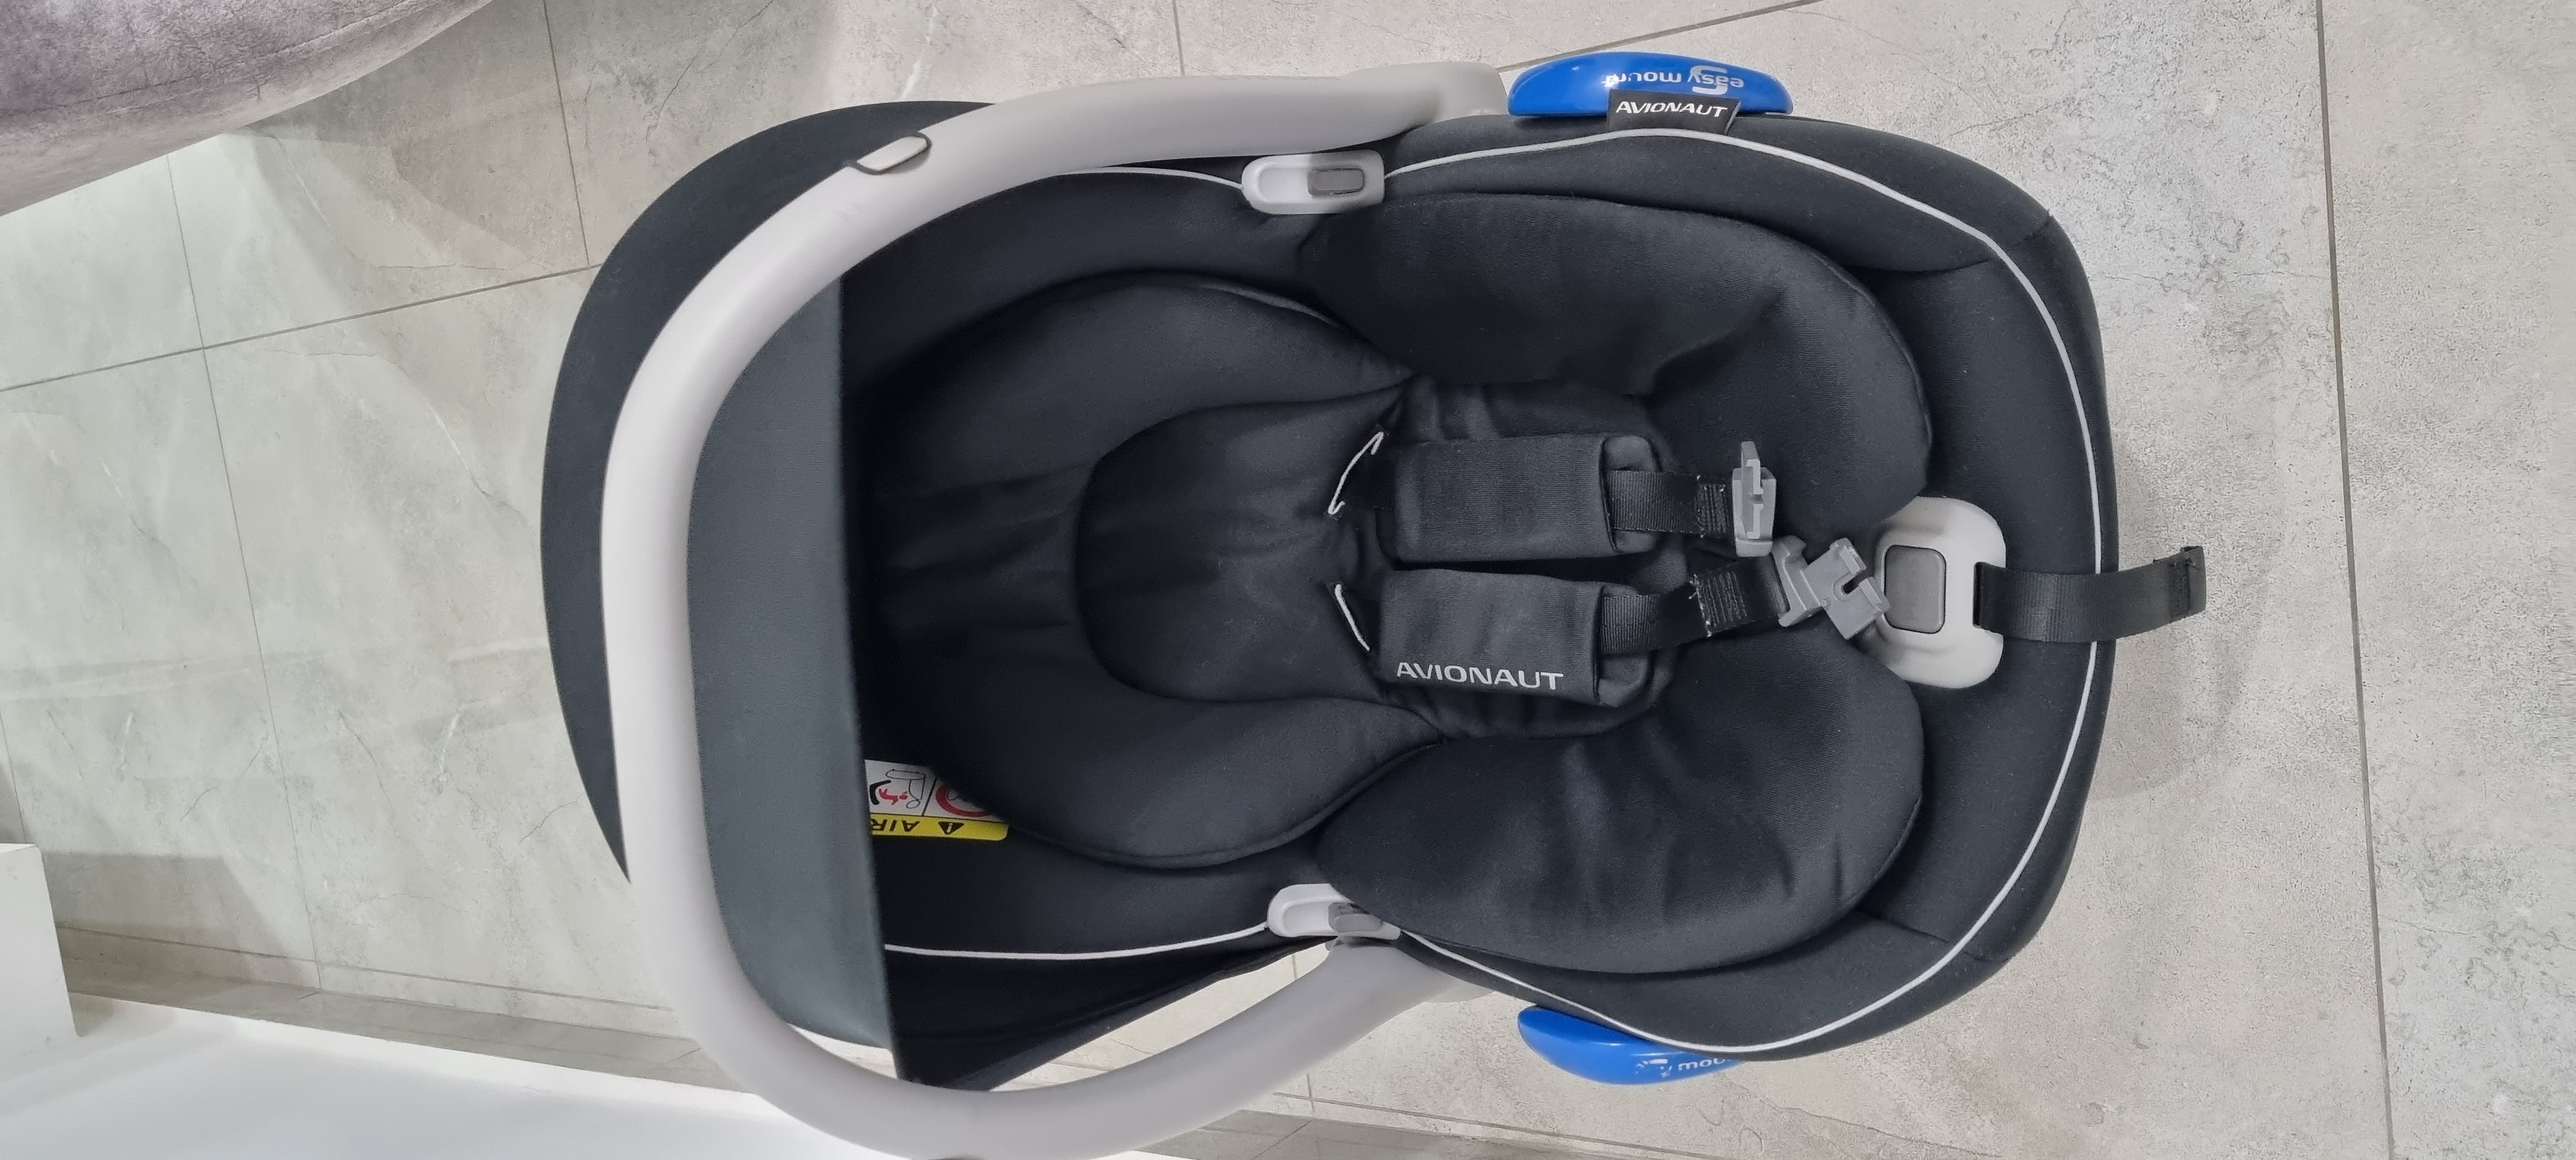 תמונה 2 ,סלקל Avionaut+איזופיקס לרכב למכירה בלוד לתינוק ולילד  אביזרי בטיחות